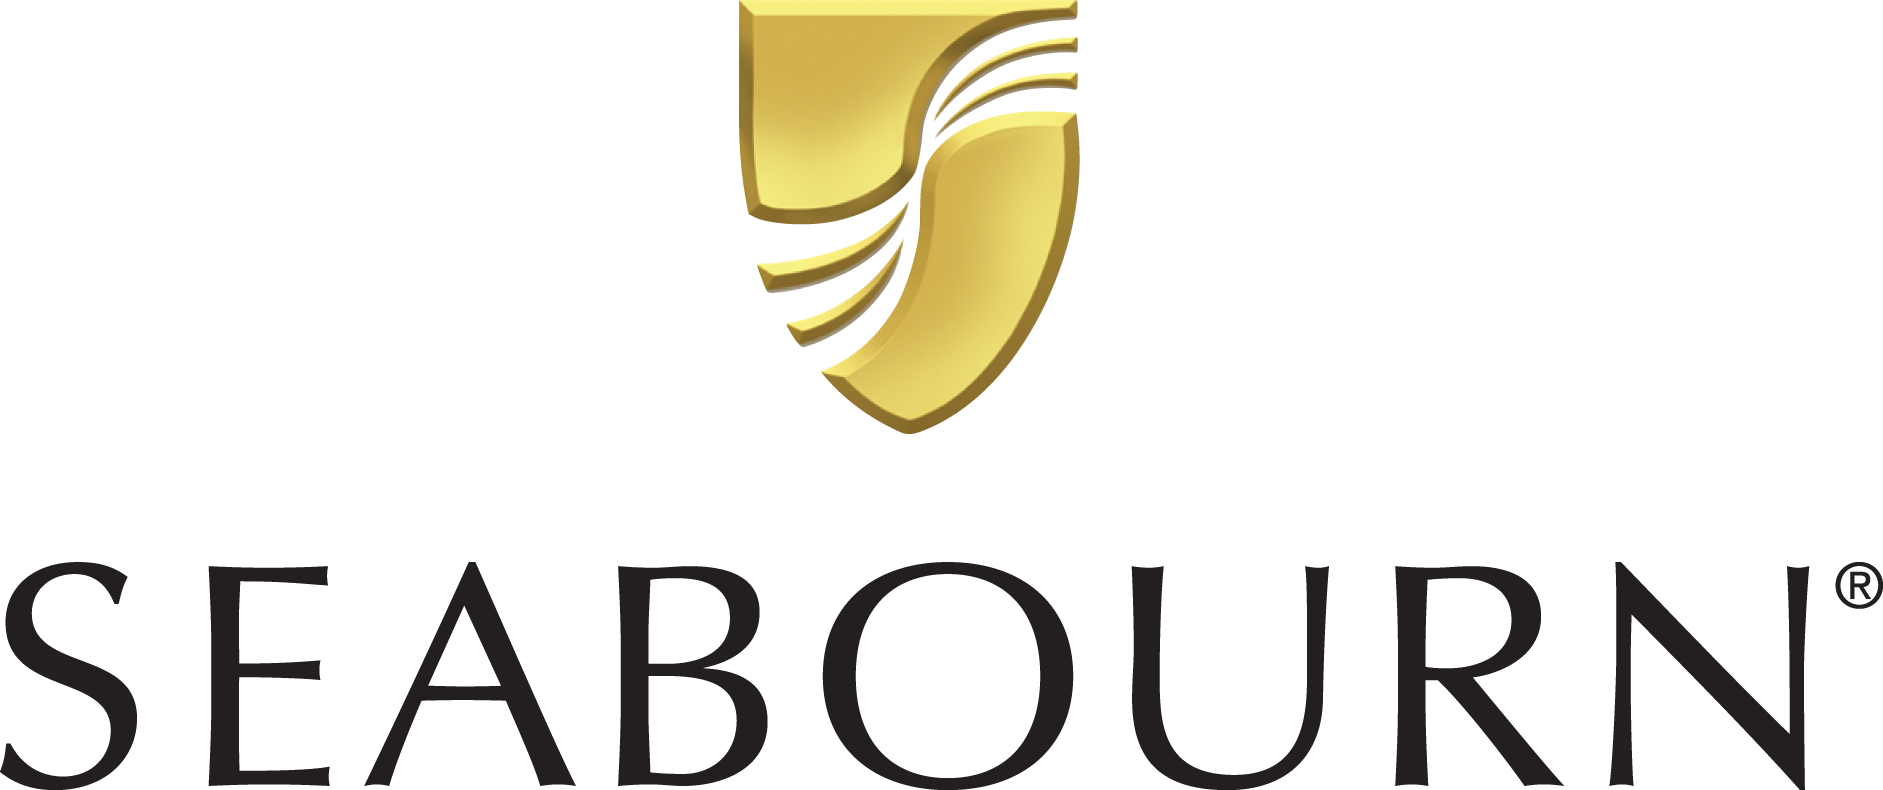 Seabourn Encore Reederei Logo